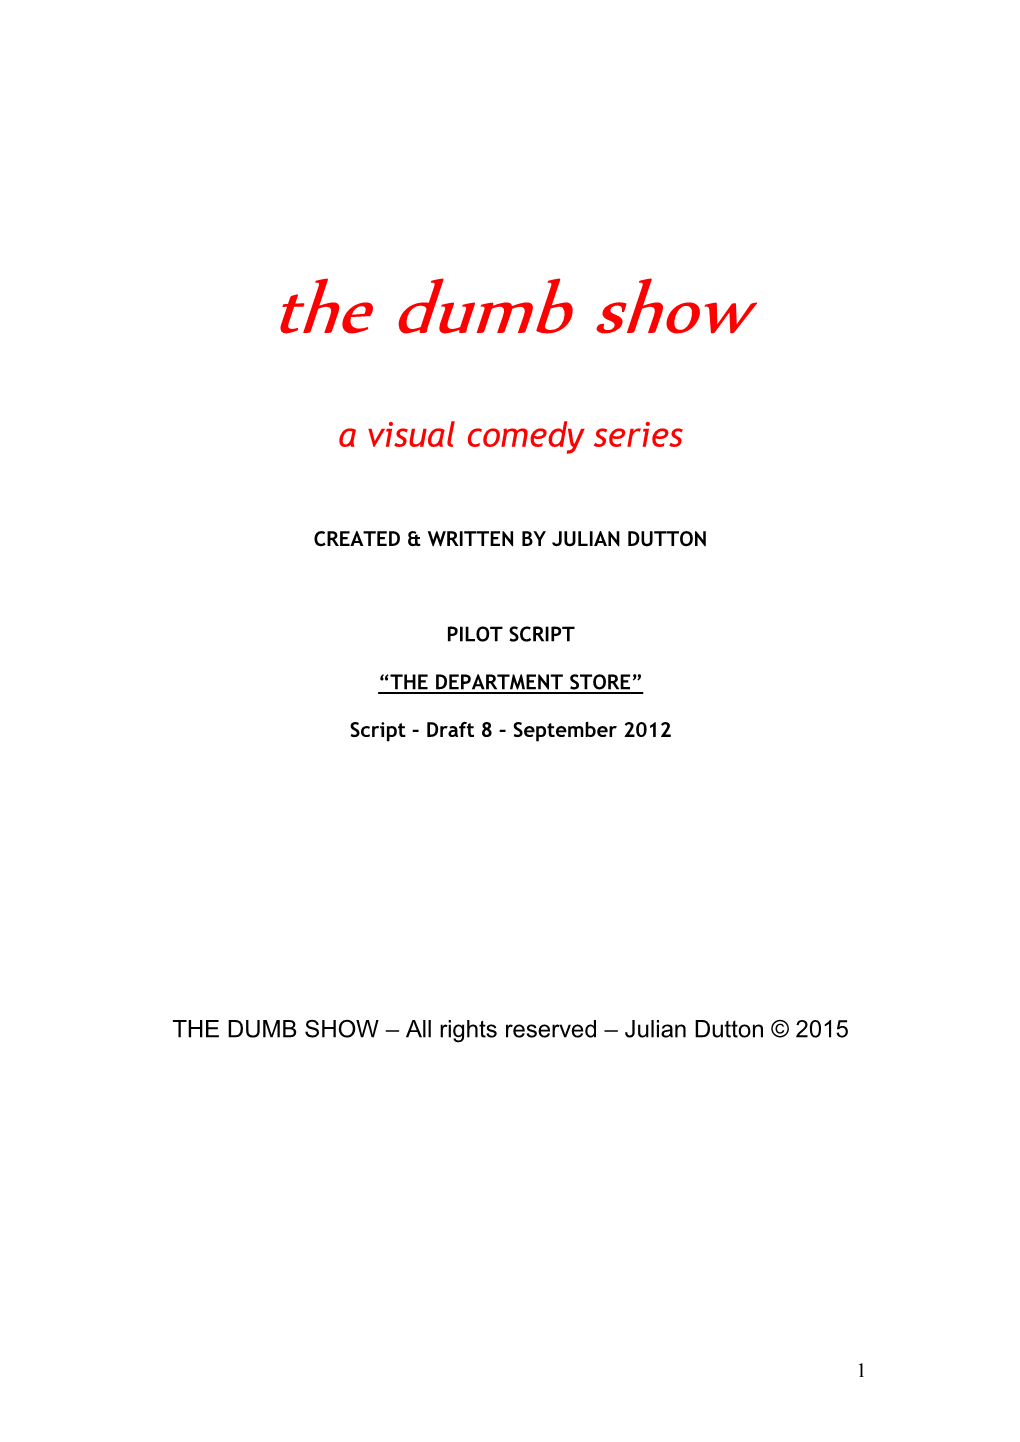 The Dumb Show – Pilot Script Dept. Store Sept 2012